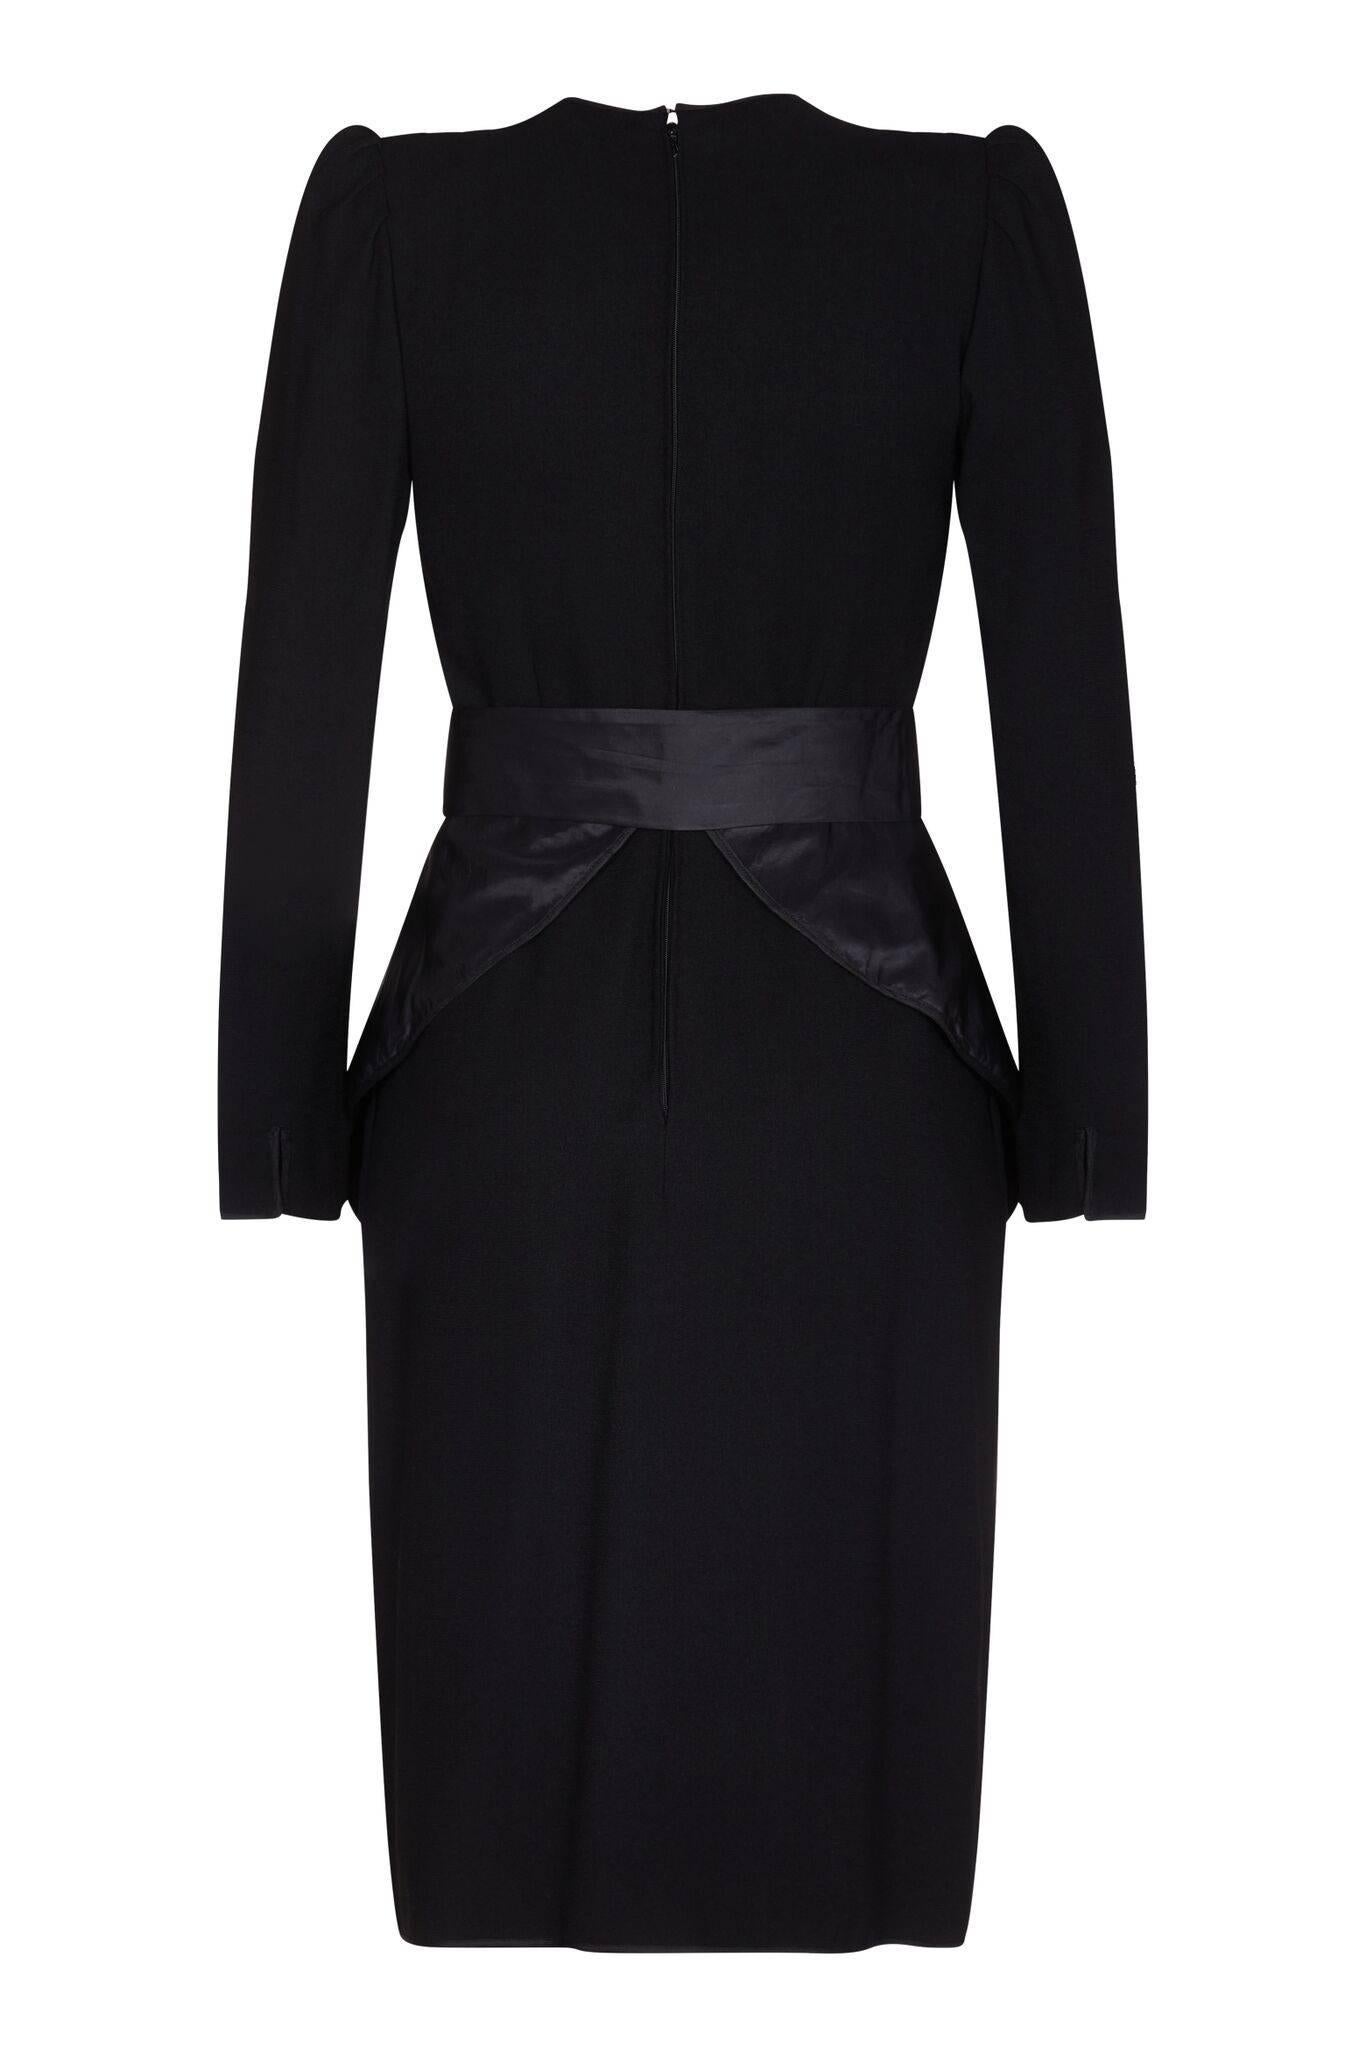 Cette robe de cocktail dramatique Nina Ricci des années 1980 est une merveilleuse combinaison d'une coupe féminine et d'un design affirmé. La robe est doublée de soie avec une superposition de crêpe de laine noire et un péplum en taffetta de soie.